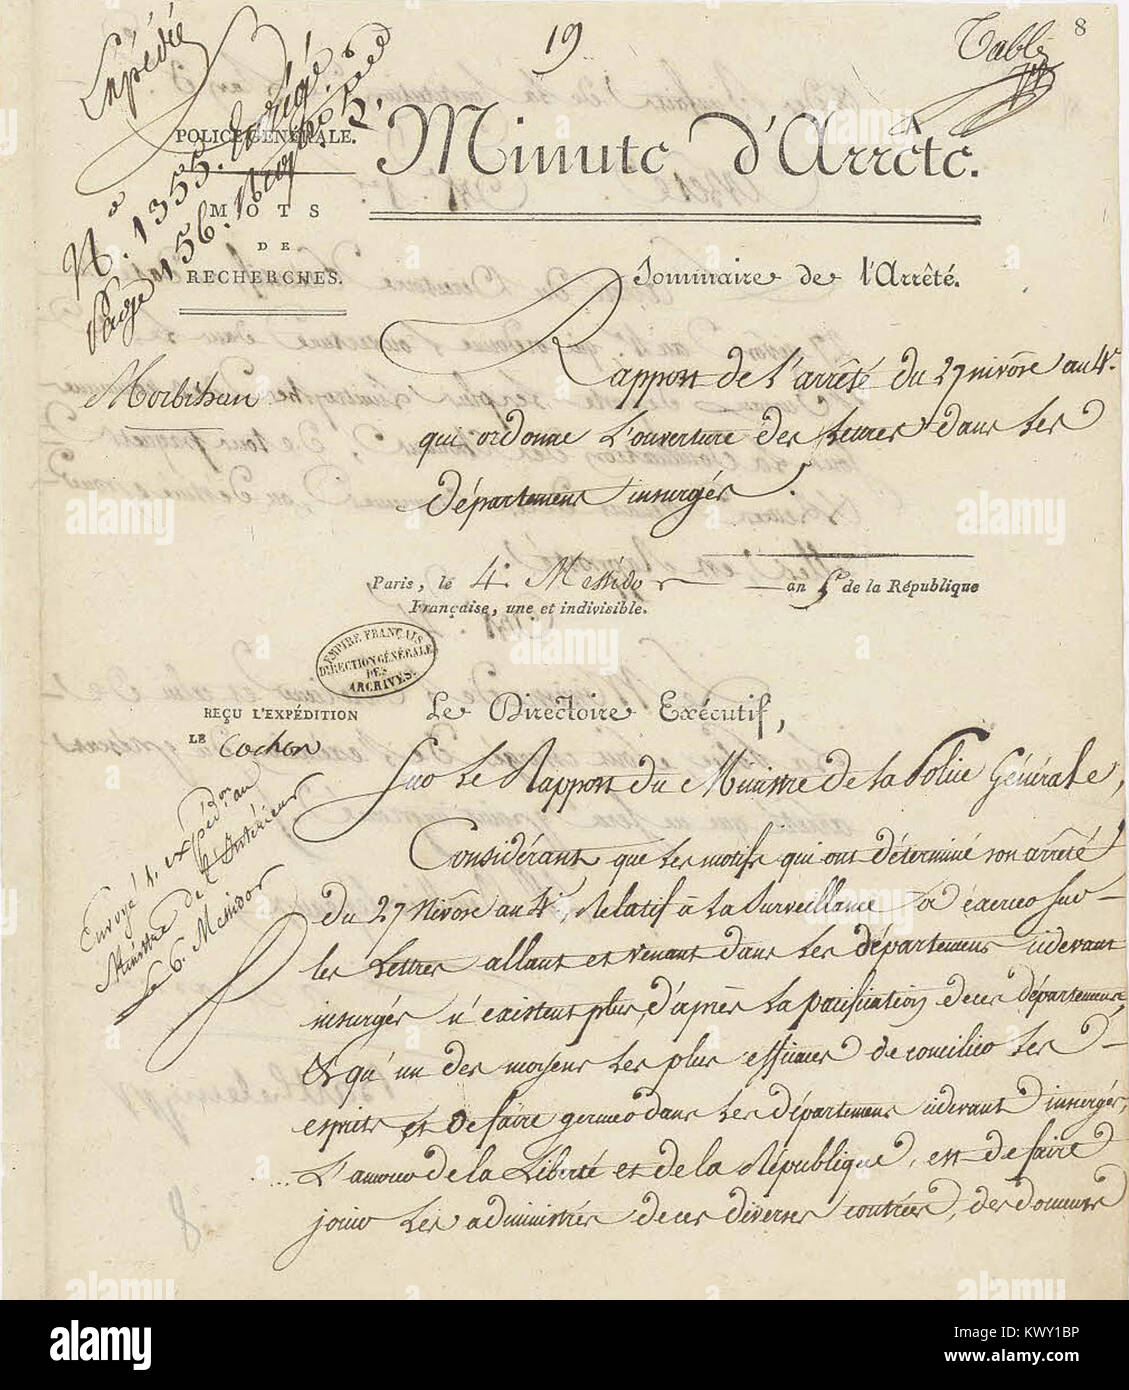 Minute d’arrêté du Directoire exécutif rapportant un arrêté du 27 nivôse an IV (17 janvier 1796) - Archives Nationales - AF-III-454 - (1) Stock Photo